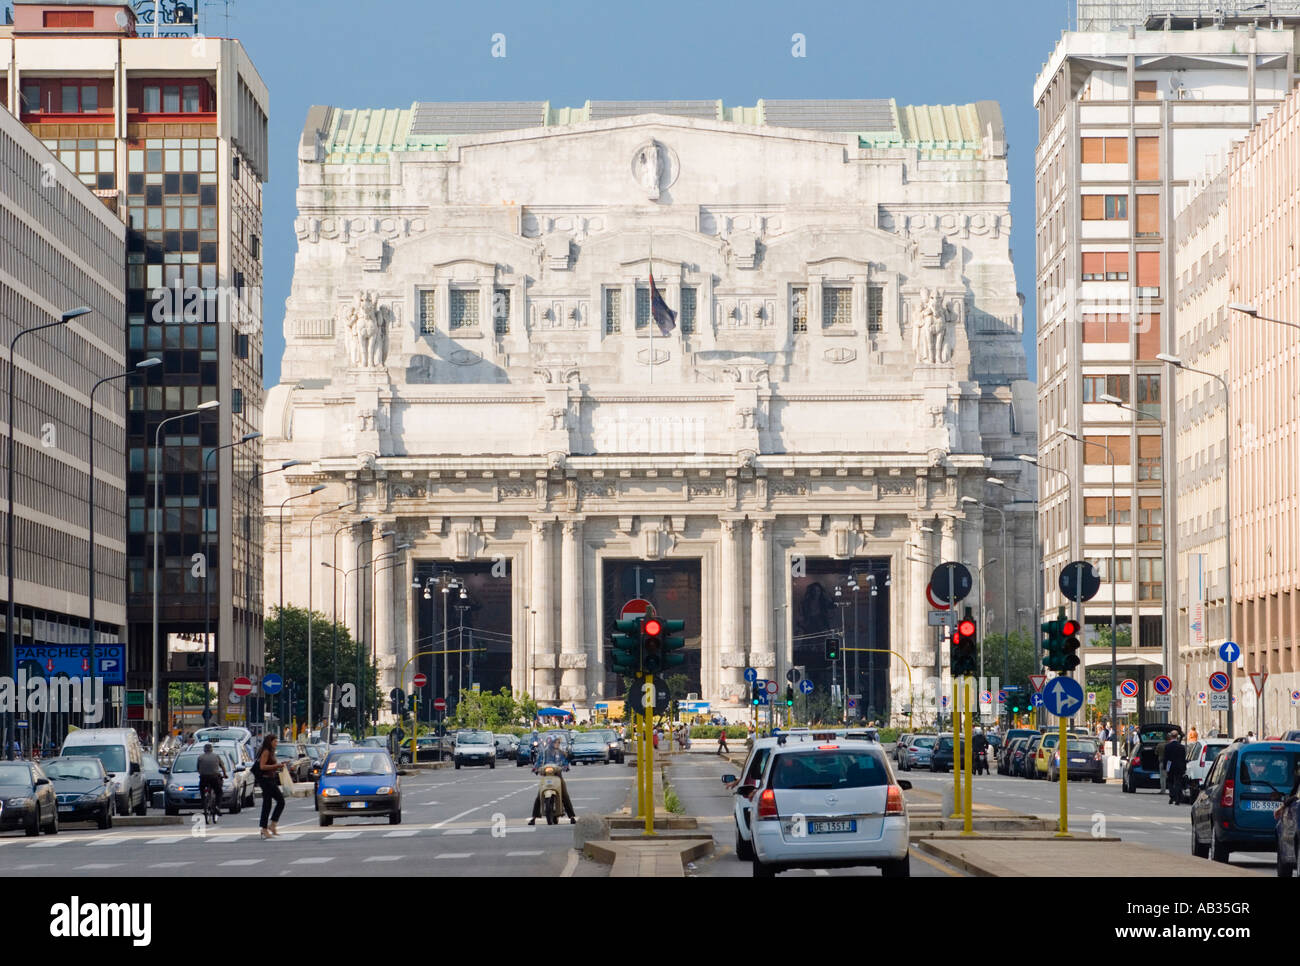 Milano Stazione Centrale Ferroviaria Centrale impressionante 1930 s facciata Art Deco dal Itlay di epoca fascista con il traffico di fronte. Foto Stock